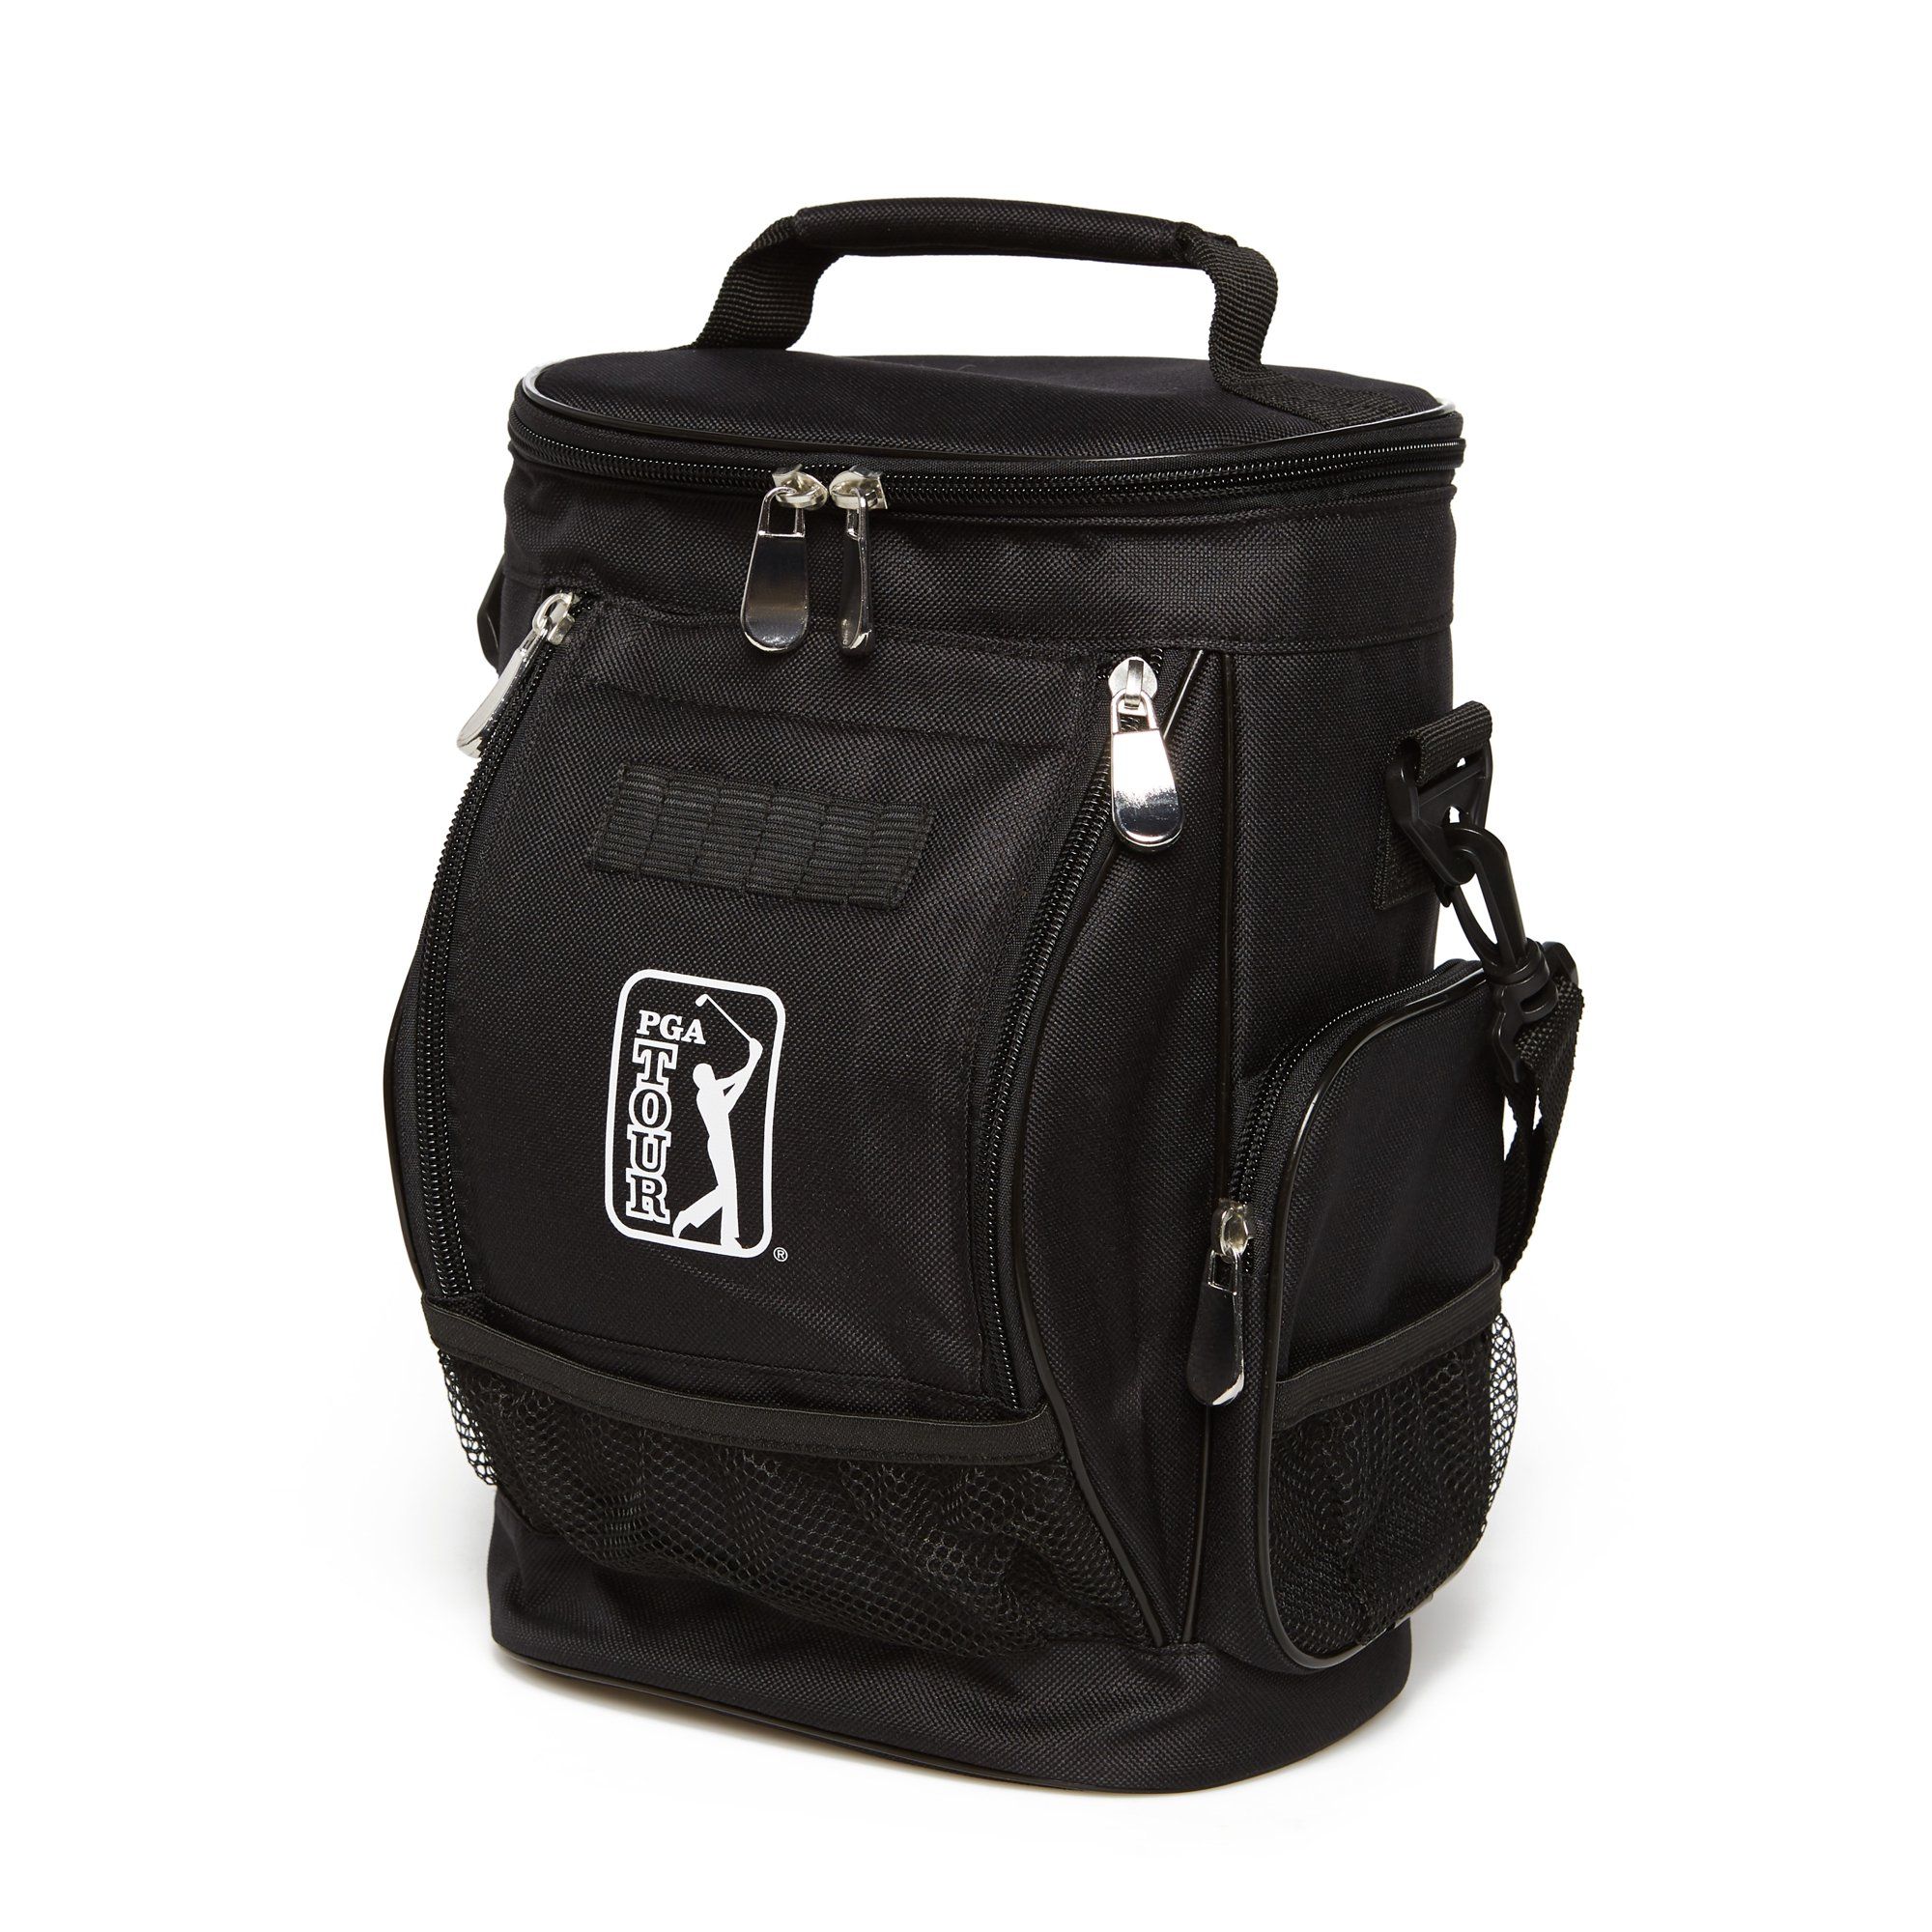 PGA Tour 10 Can Insulated Cooler Bag, Black | Walmart (US)